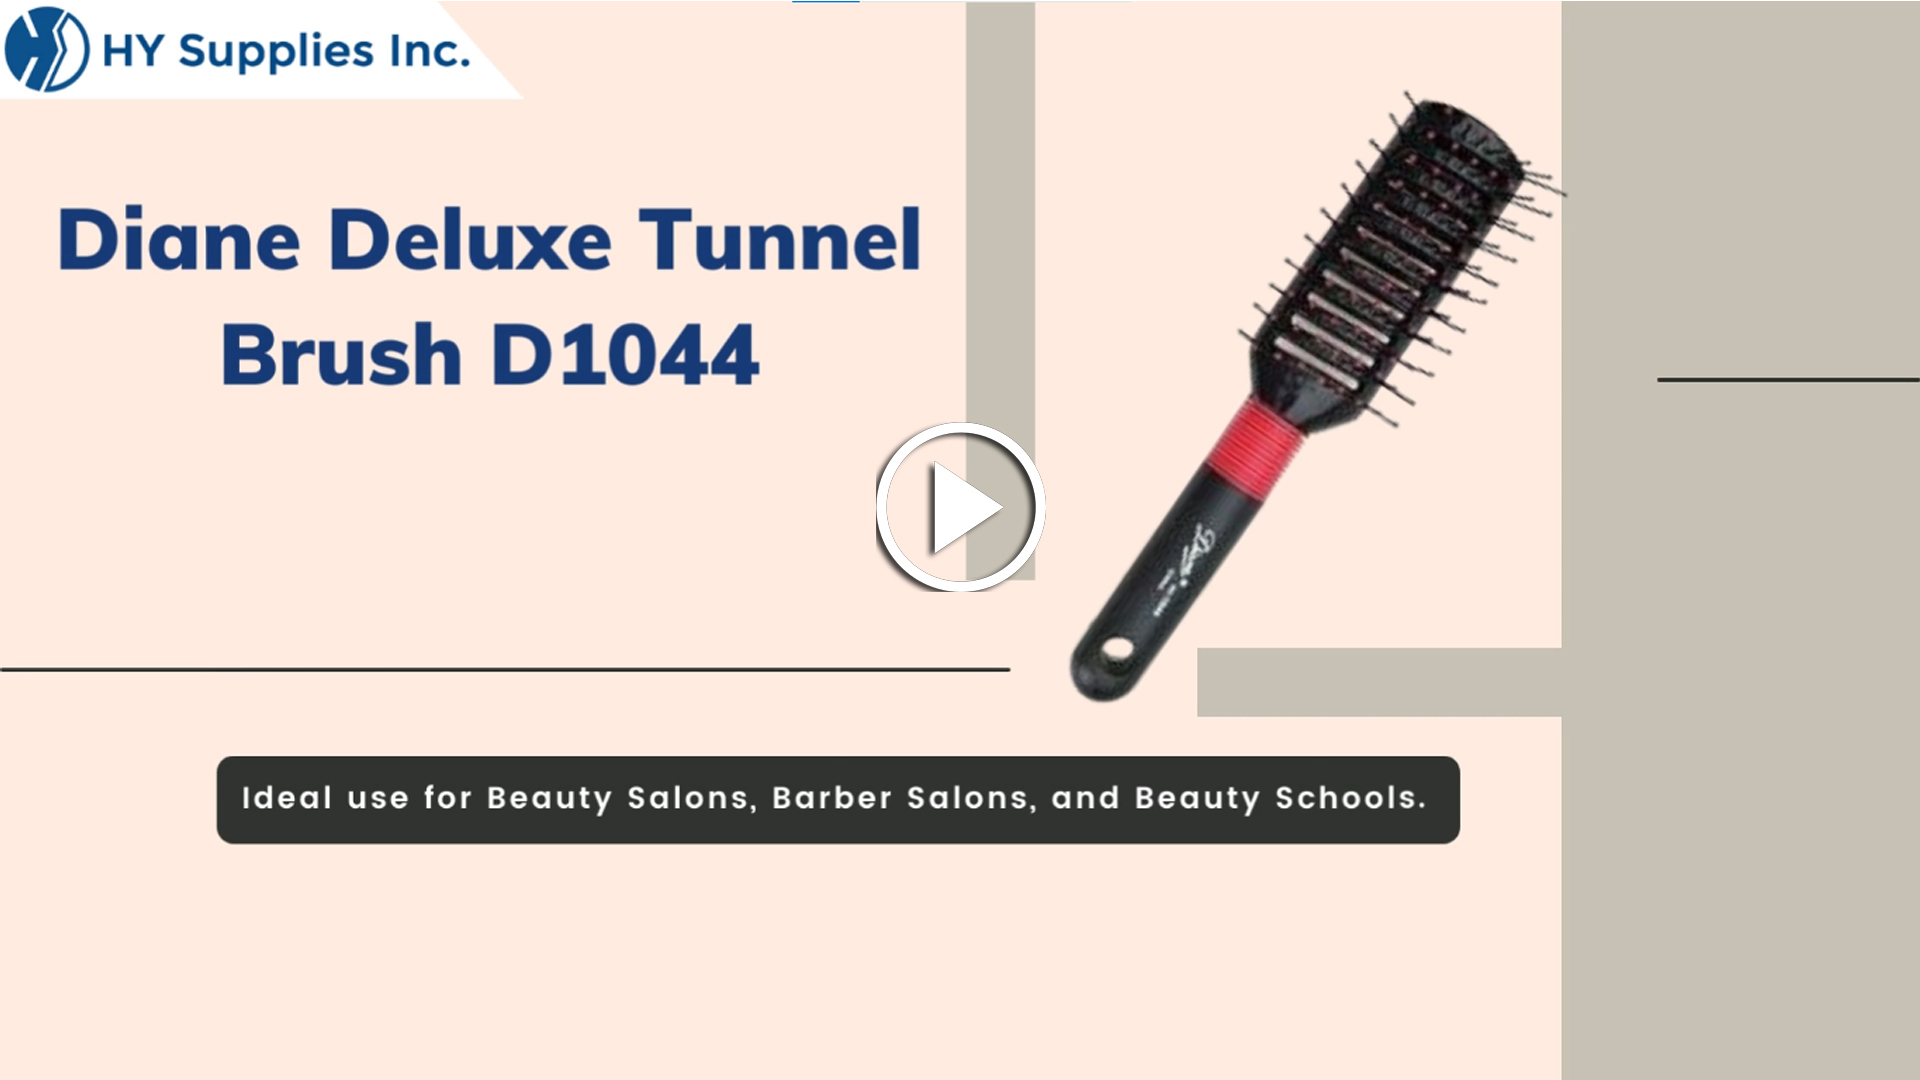 Diane Deluxe Tunnel Brush D1044